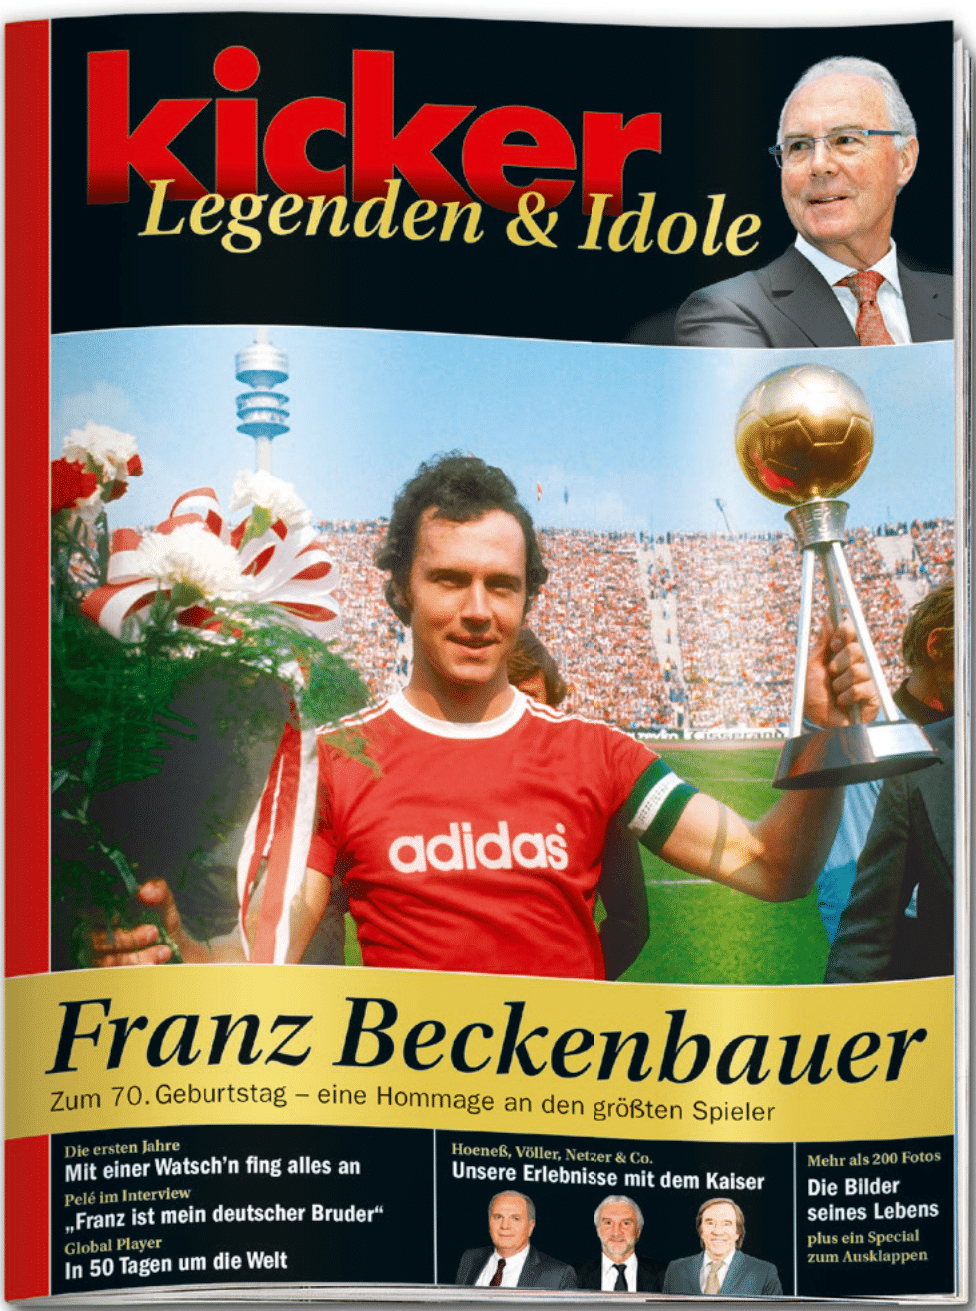 kicker Sonderheft Legenden & Idole Franz Beckenbauer